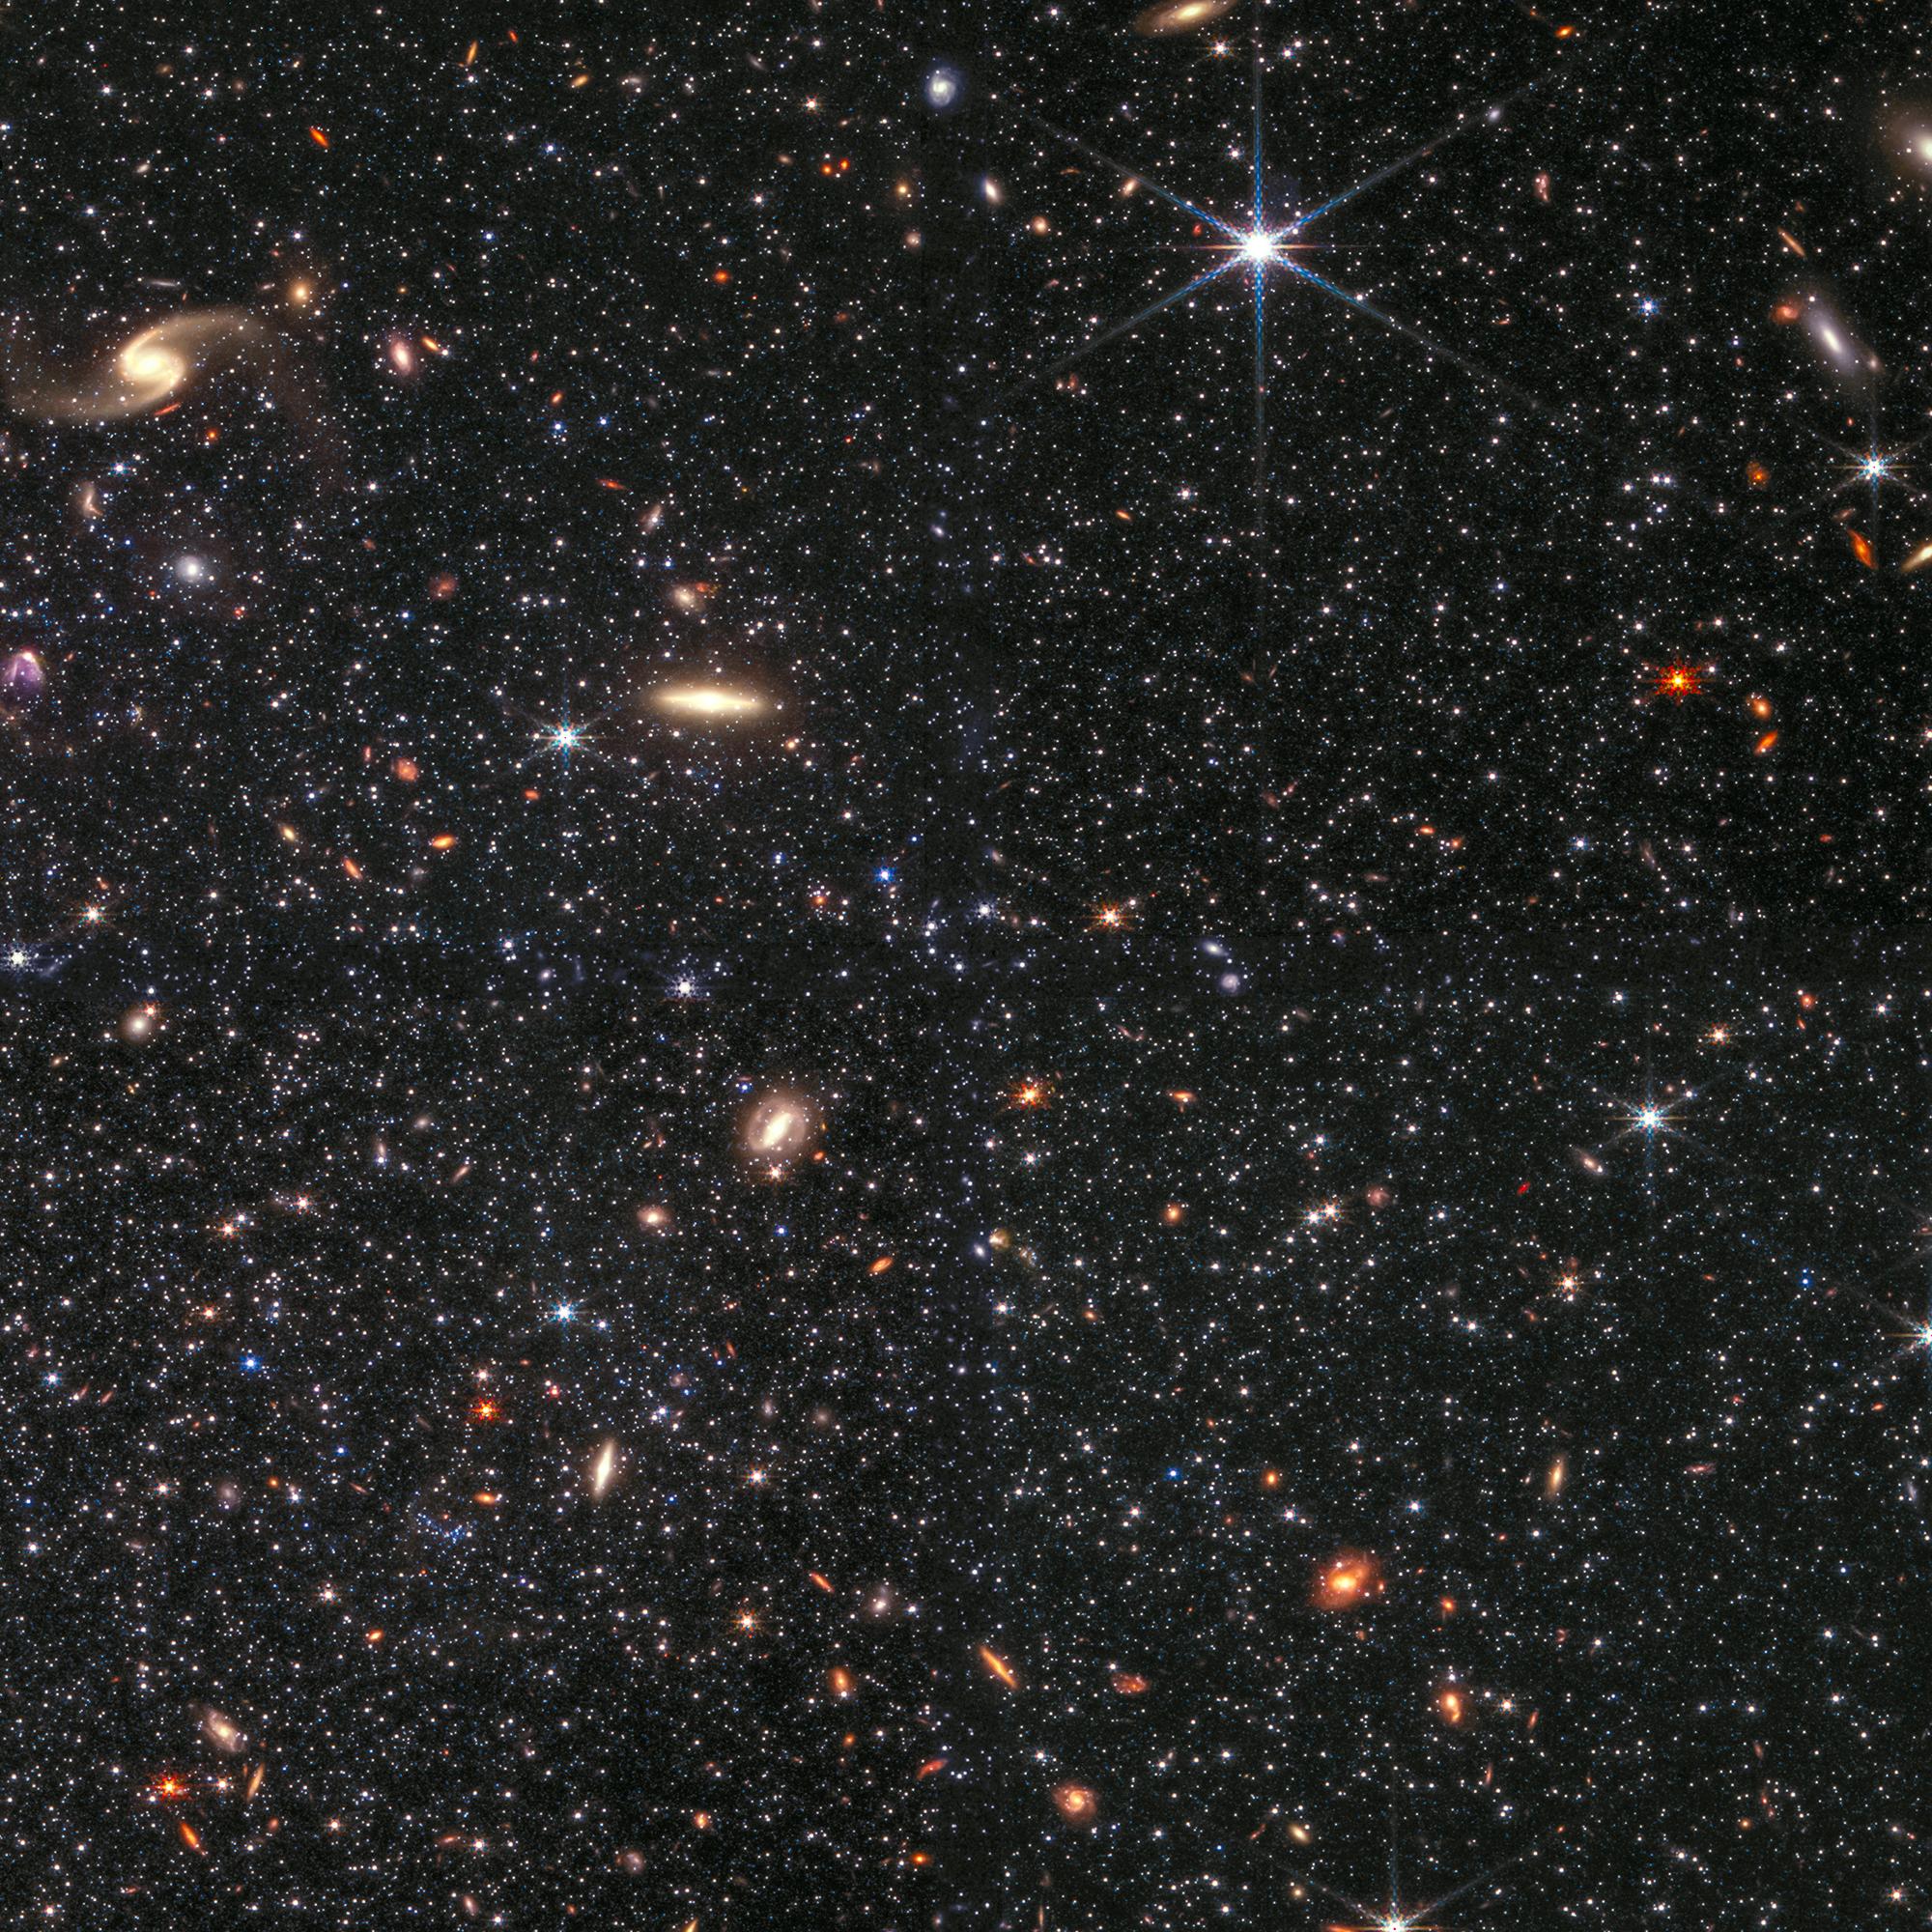 30x20 Galaxia enana Telescopio James Webb Fotografía espacial  Fotografía artística de la NASA